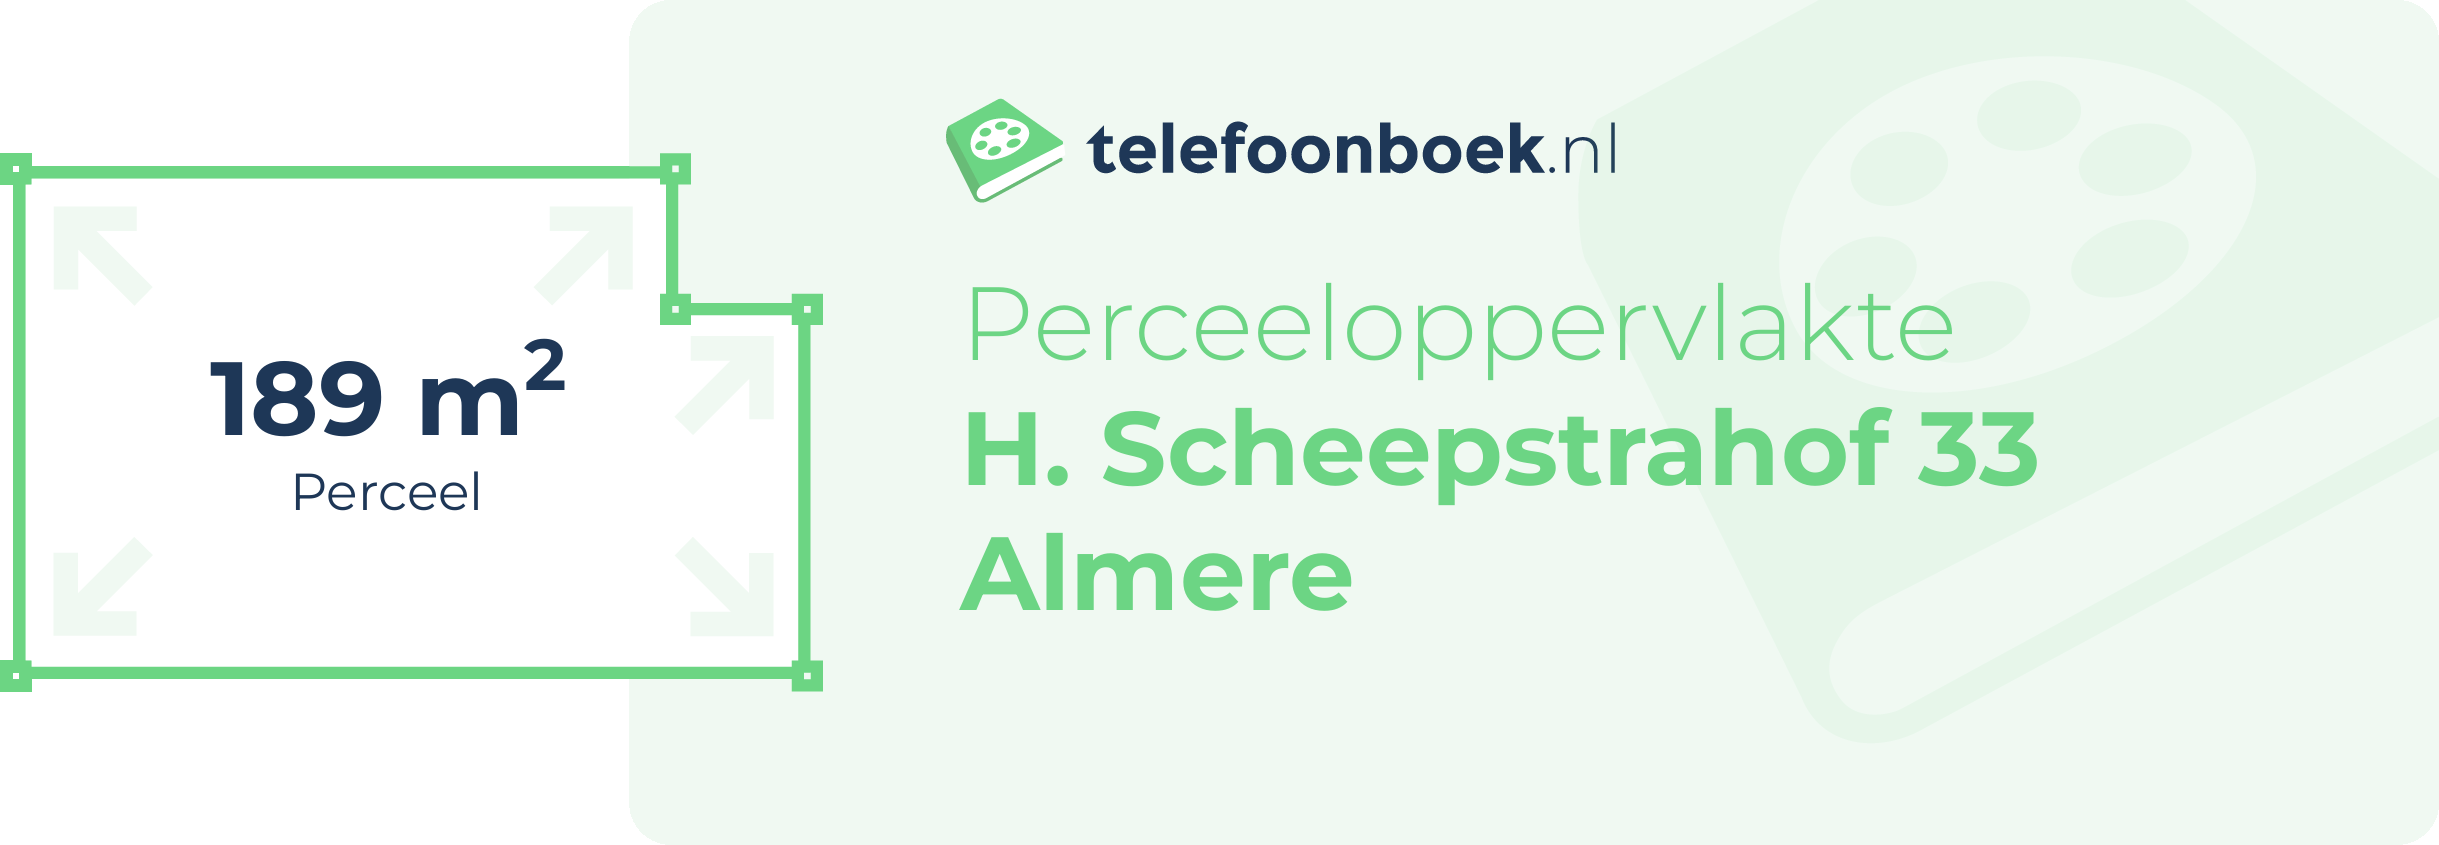 Perceeloppervlakte H. Scheepstrahof 33 Almere